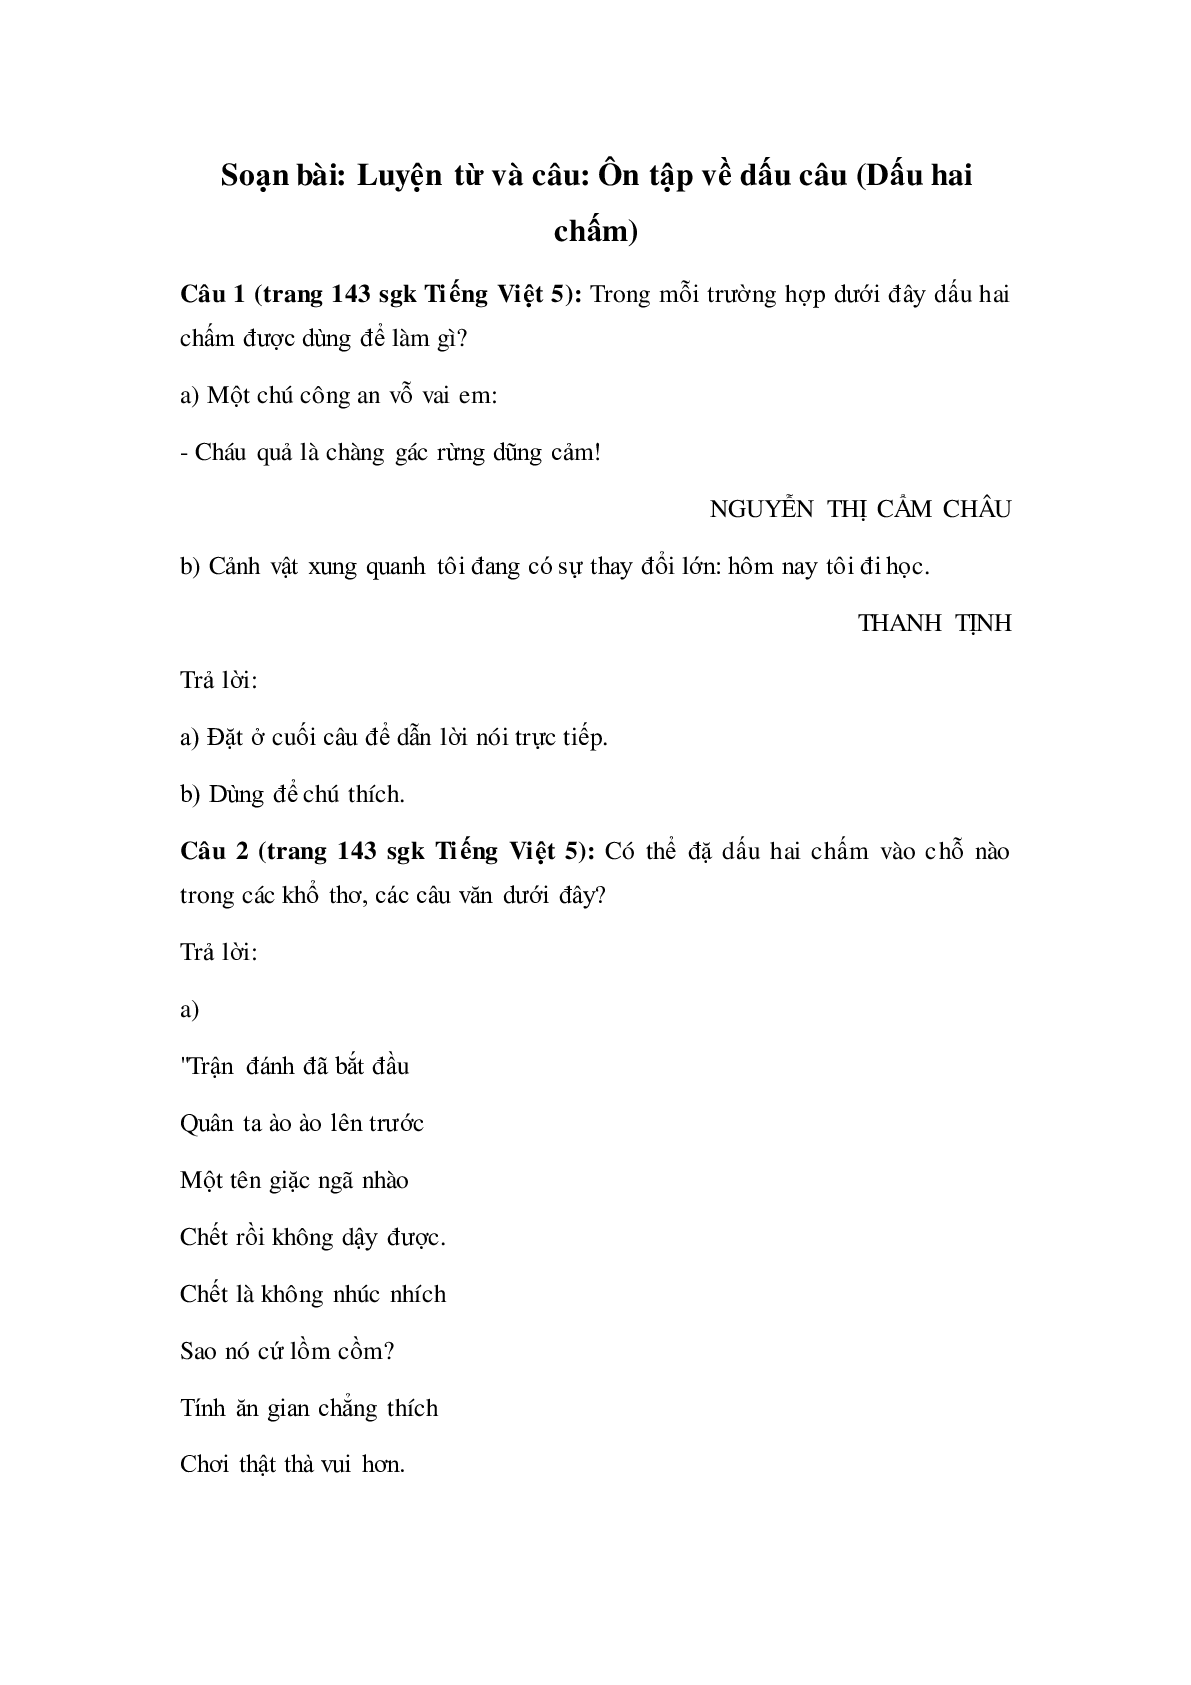 Soạn Tiếng Việt lớp 5: Luyện từ và câu: Ôn tập về dấu câu (Dấu hai chấm) mới nhất (trang 1)